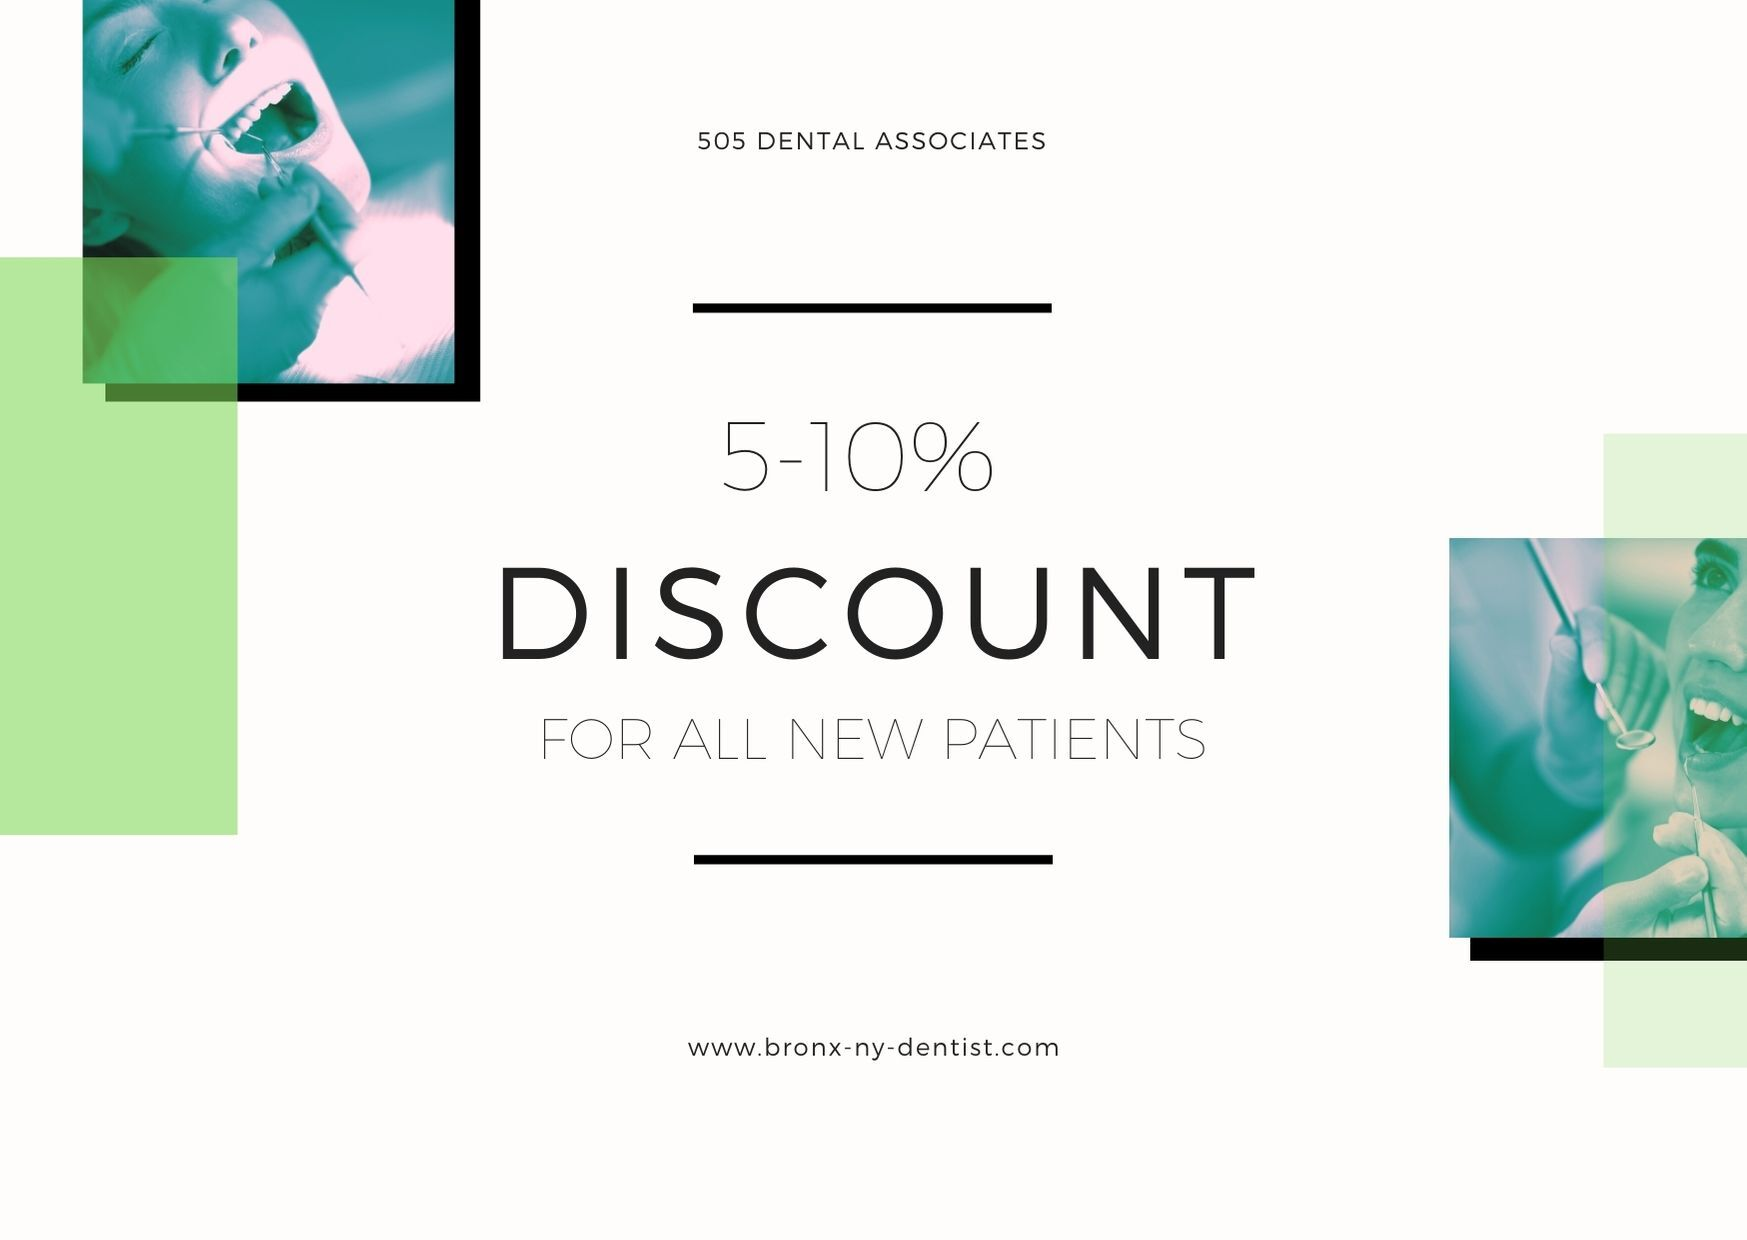 505 Dental Associates offers a discount'